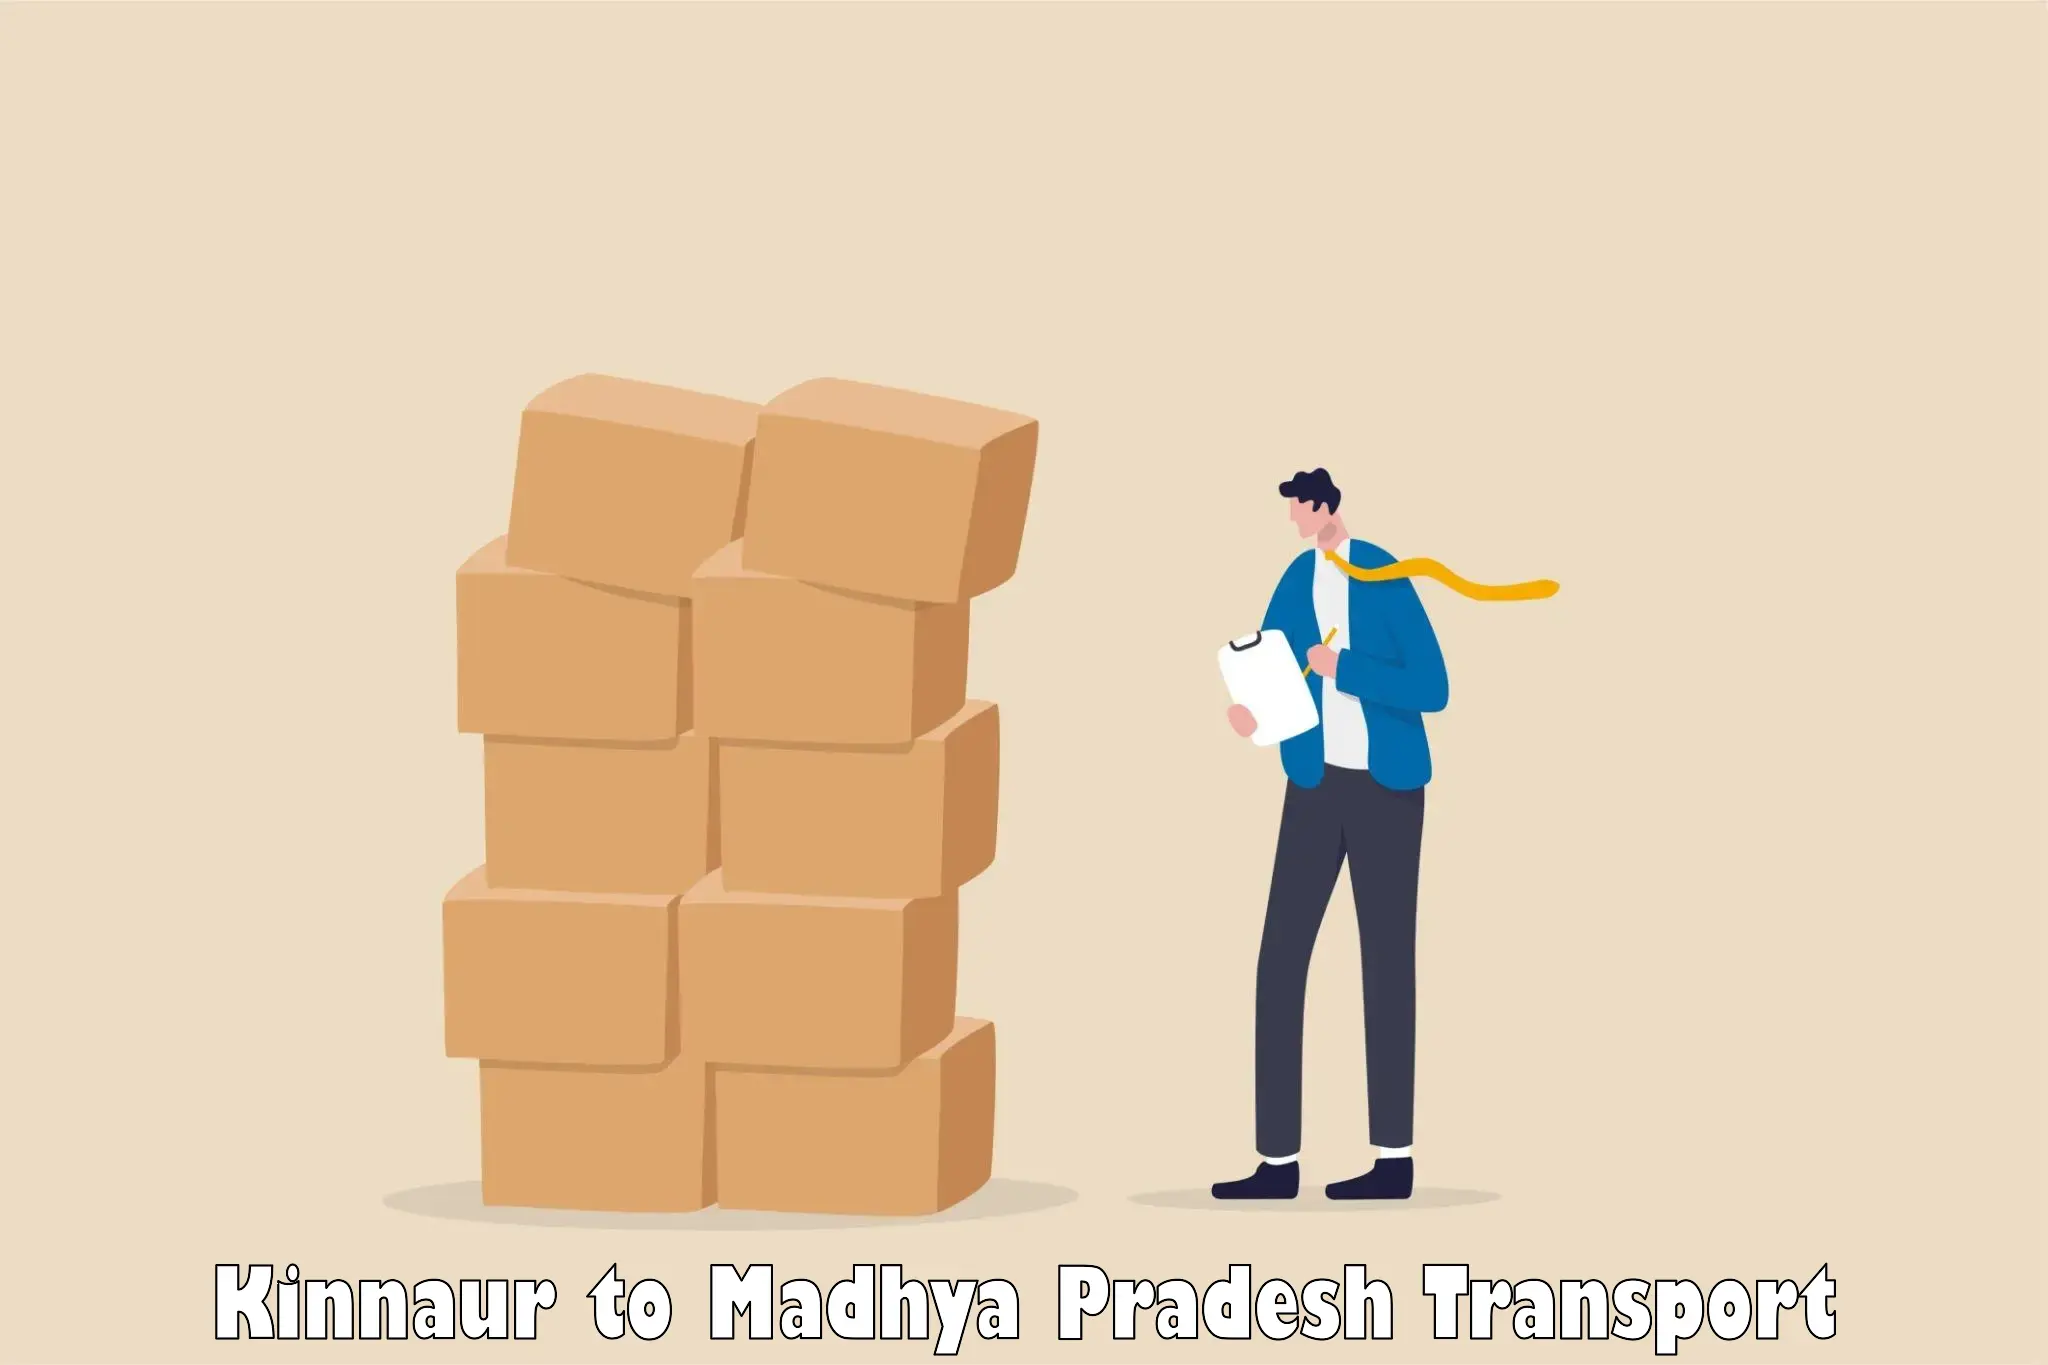 All India transport service Kinnaur to Datia